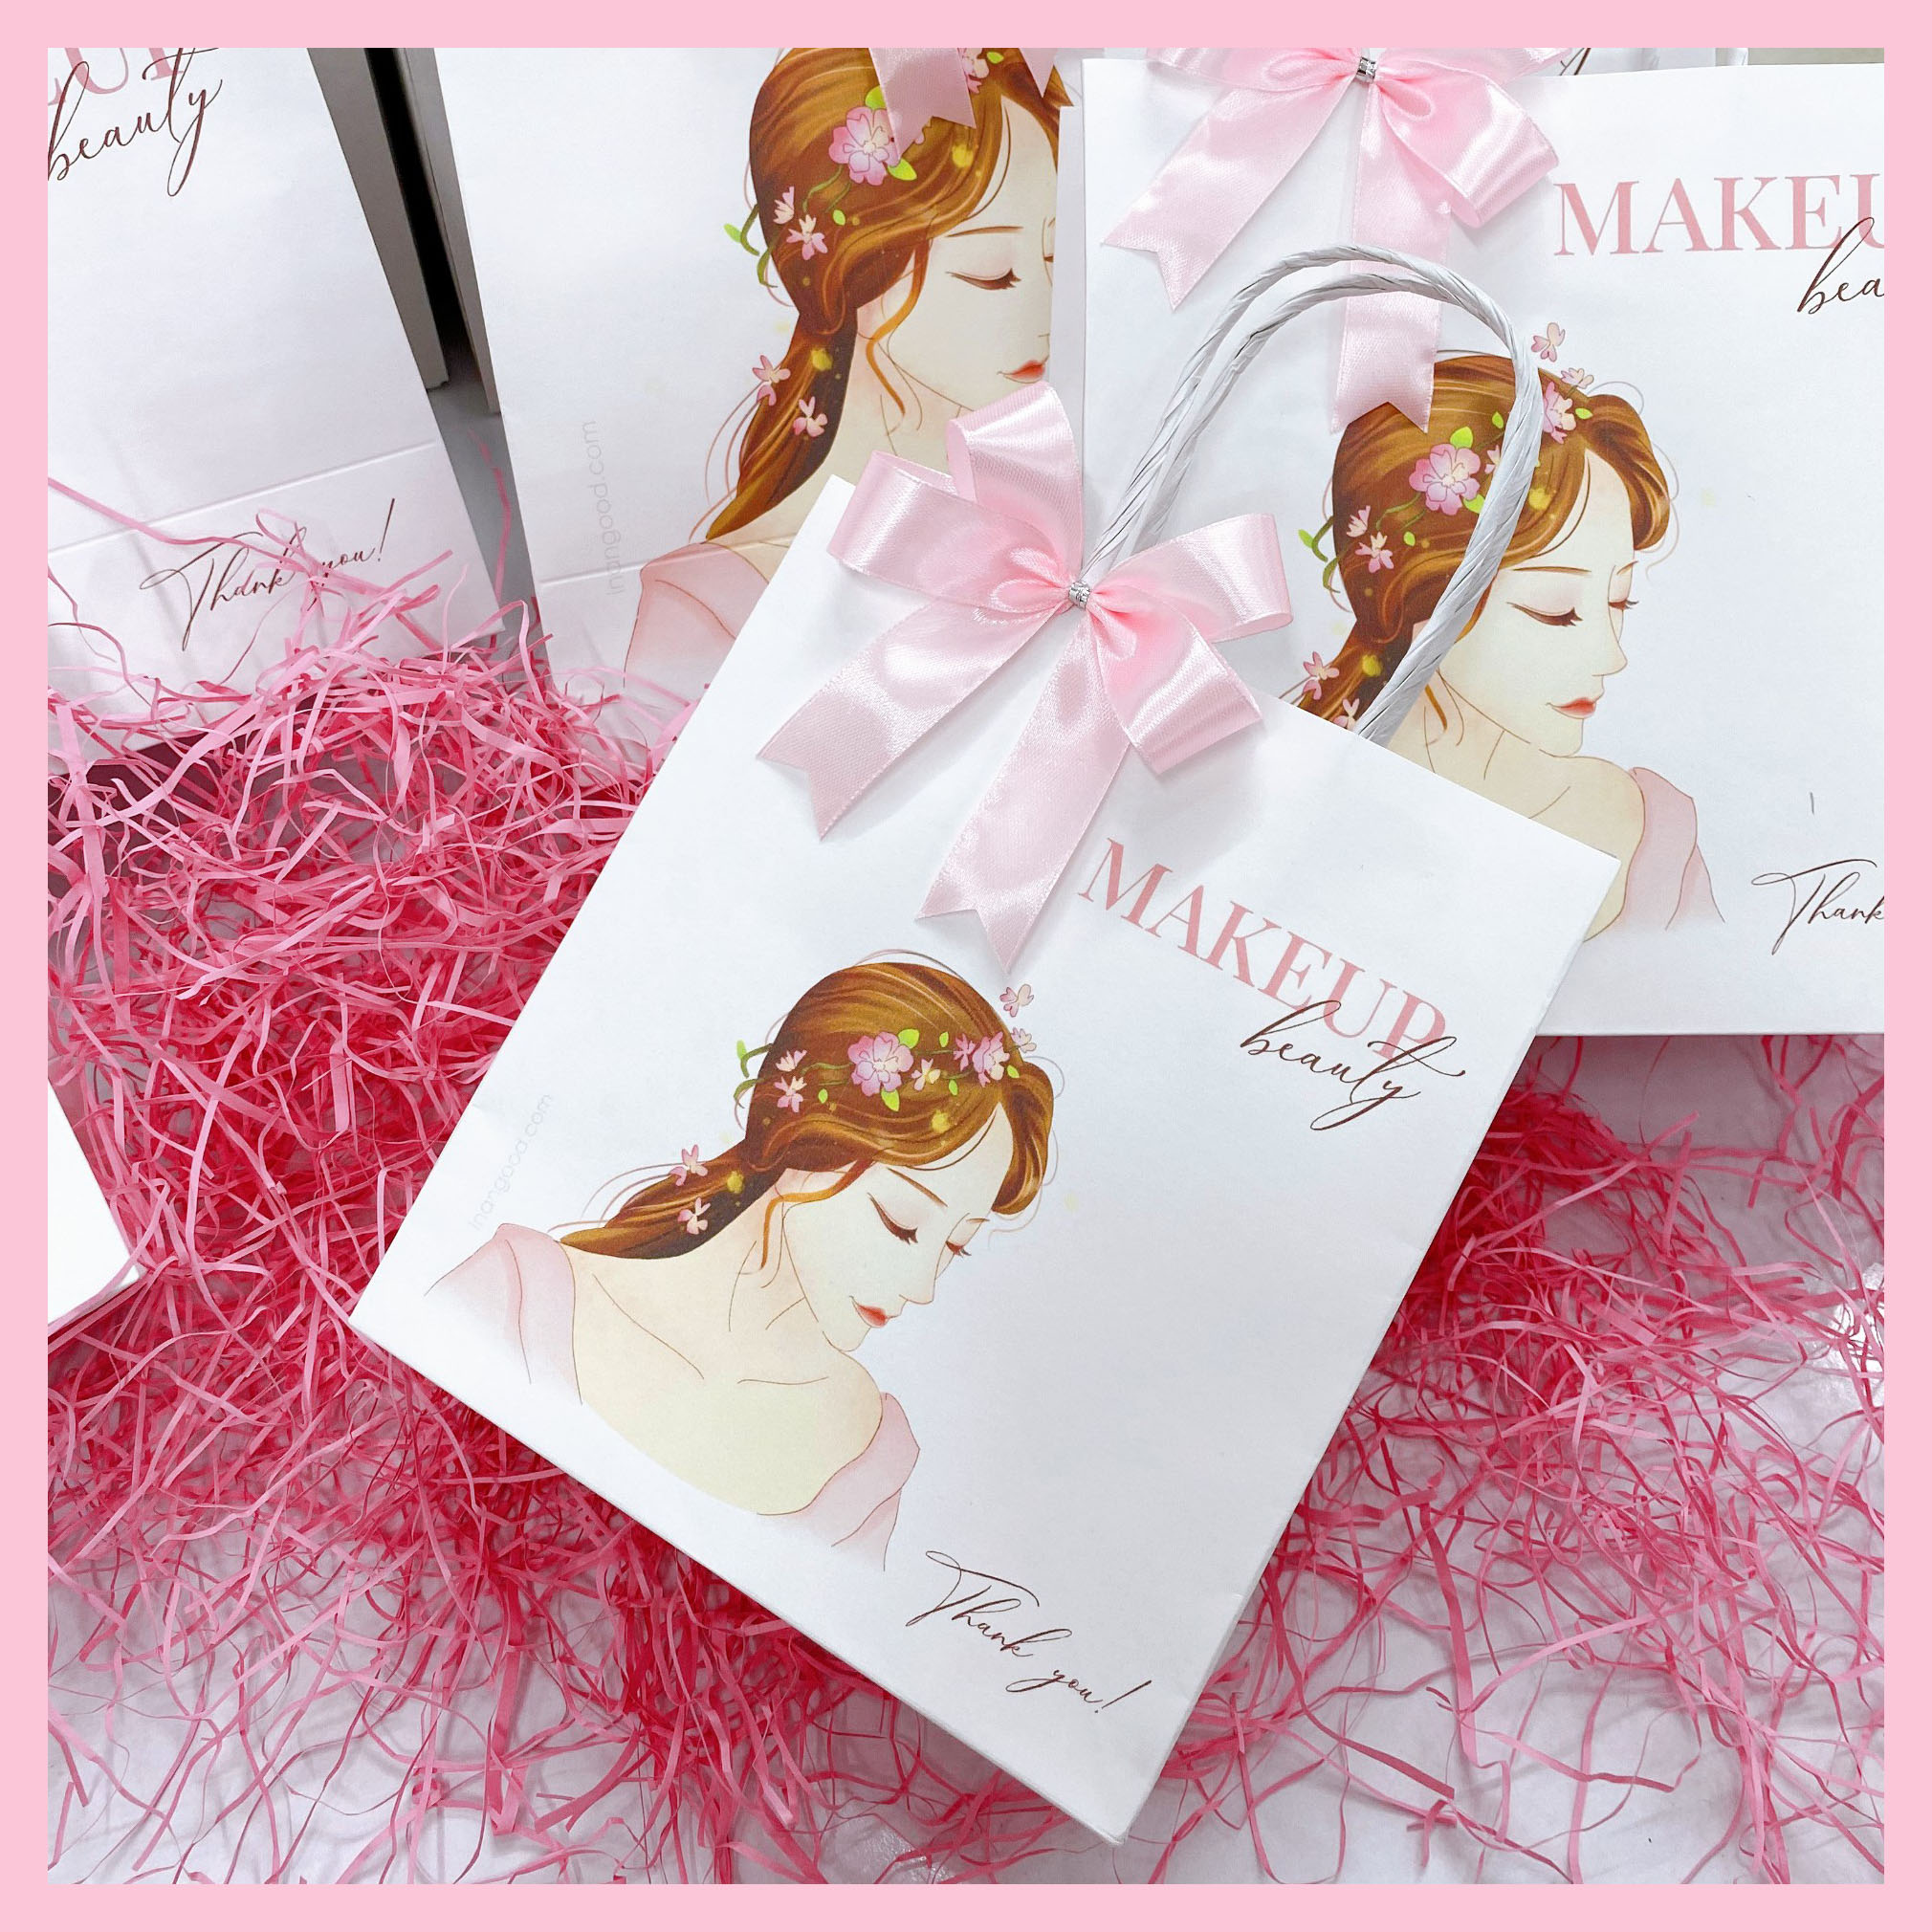 Túi giấy kraft mẫu cô gái makeup dành cho shop mỹ phẩm, spa với nhiều kích thước tặng kèm nơ hồng trang trí